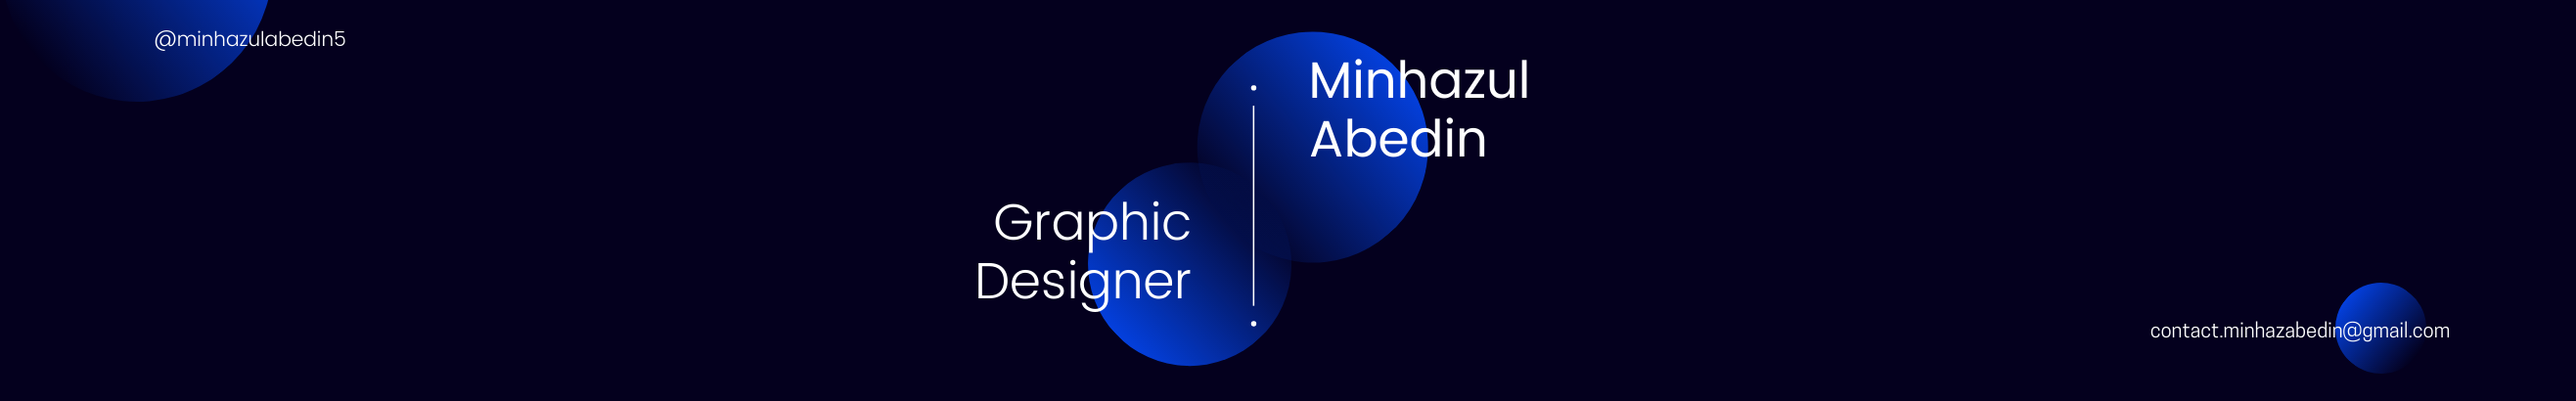 Minhazul Abedin's profile banner